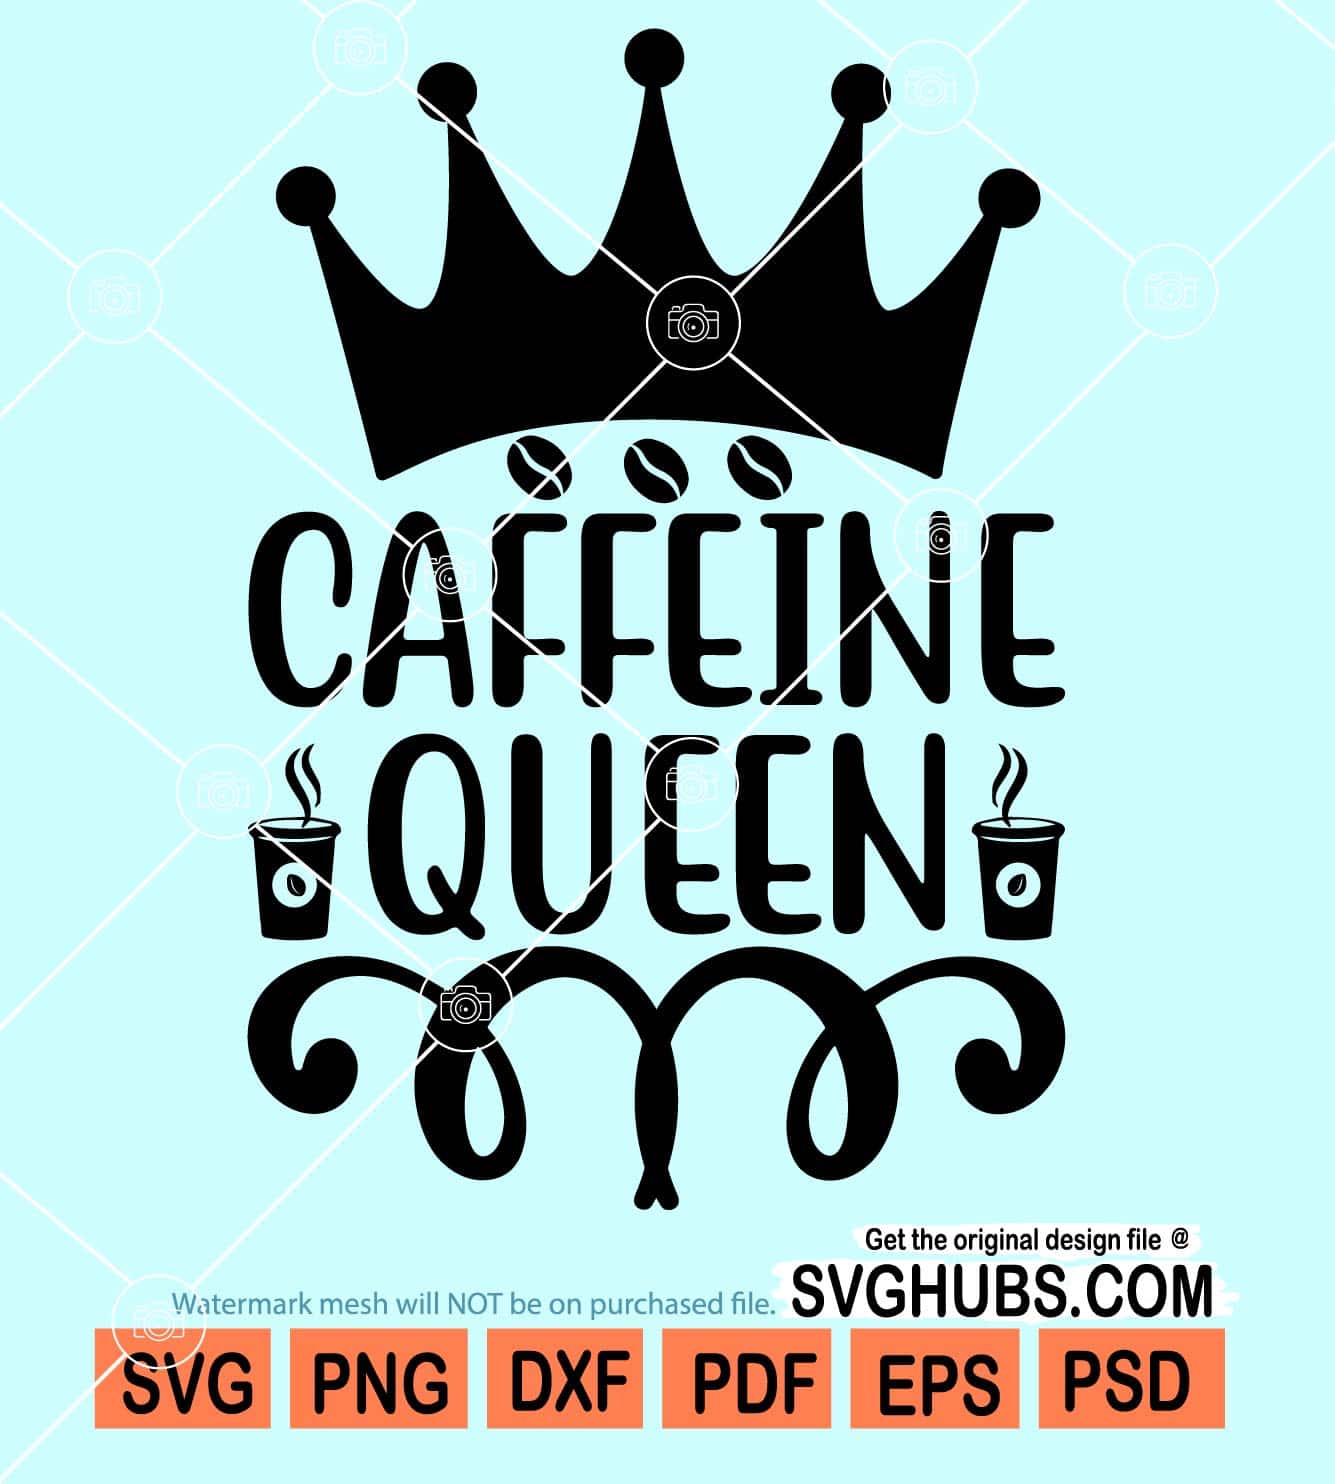 Caffeine queens svg